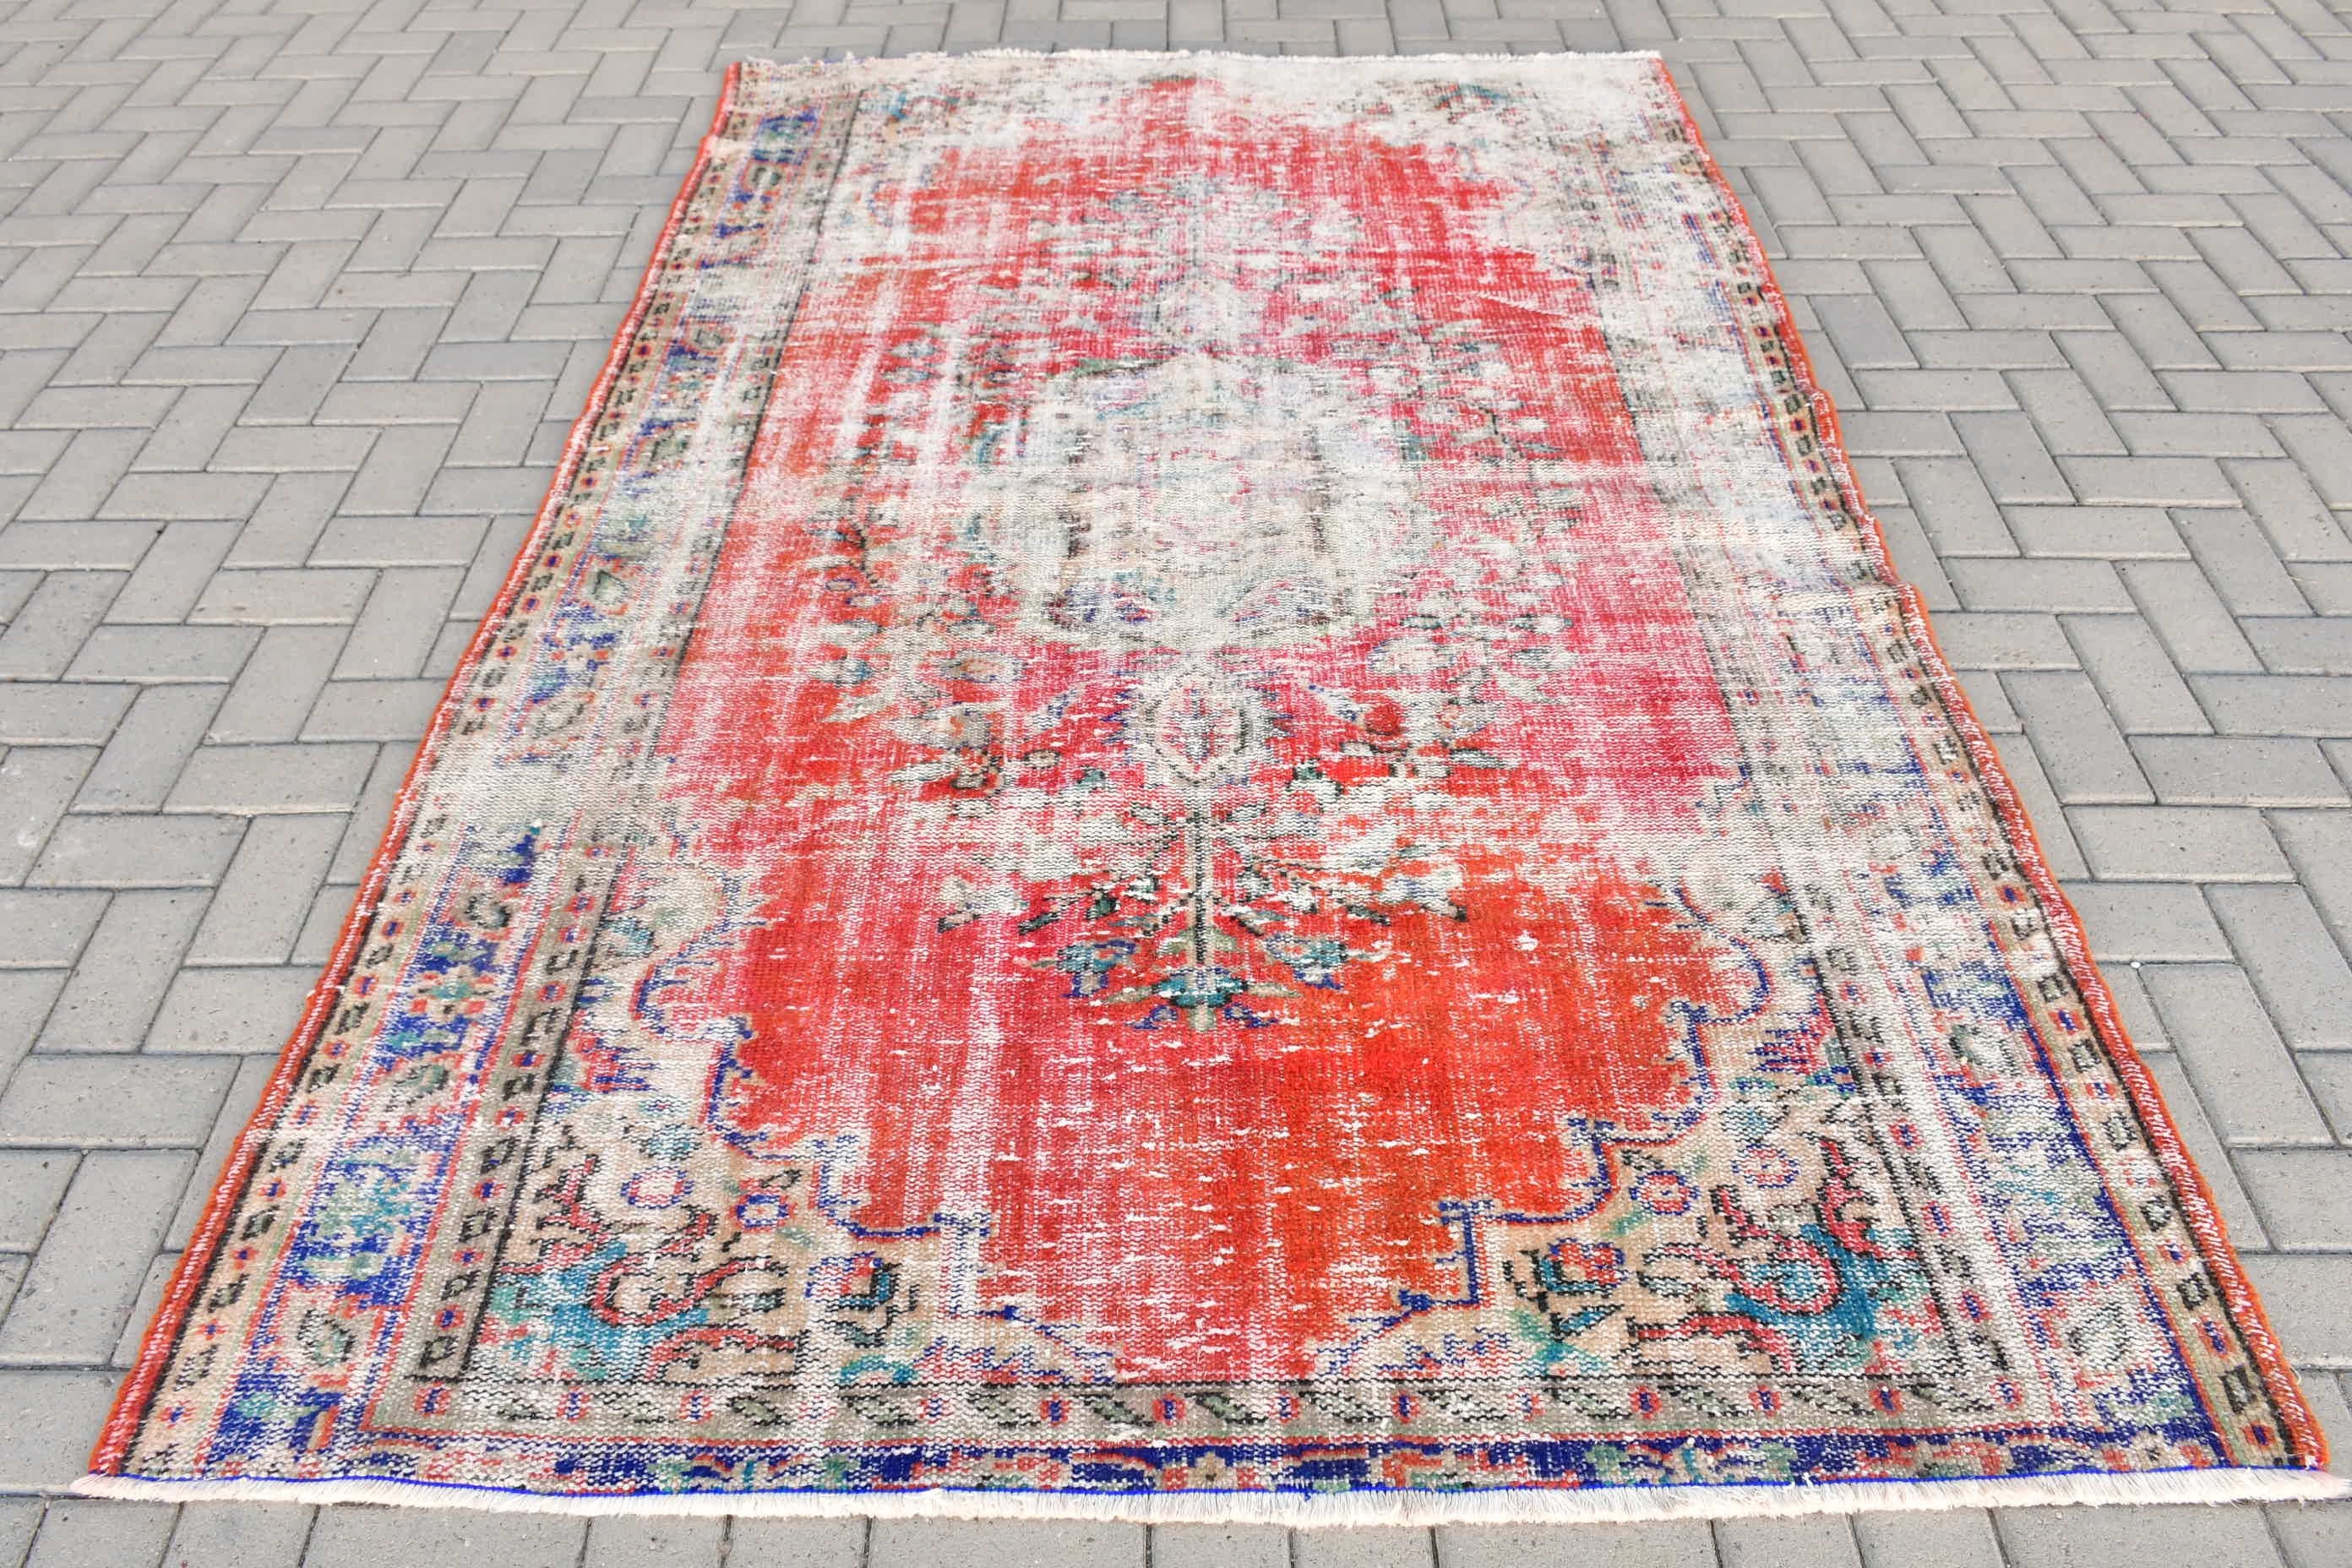 Oriental Rug, Floor Rug, Turkish Rug, Red Moroccan Rug, Vintage Rugs, 5.4x8.3 ft Large Rugs, Living Room Rug, Bedroom Rug, Cool Rugs